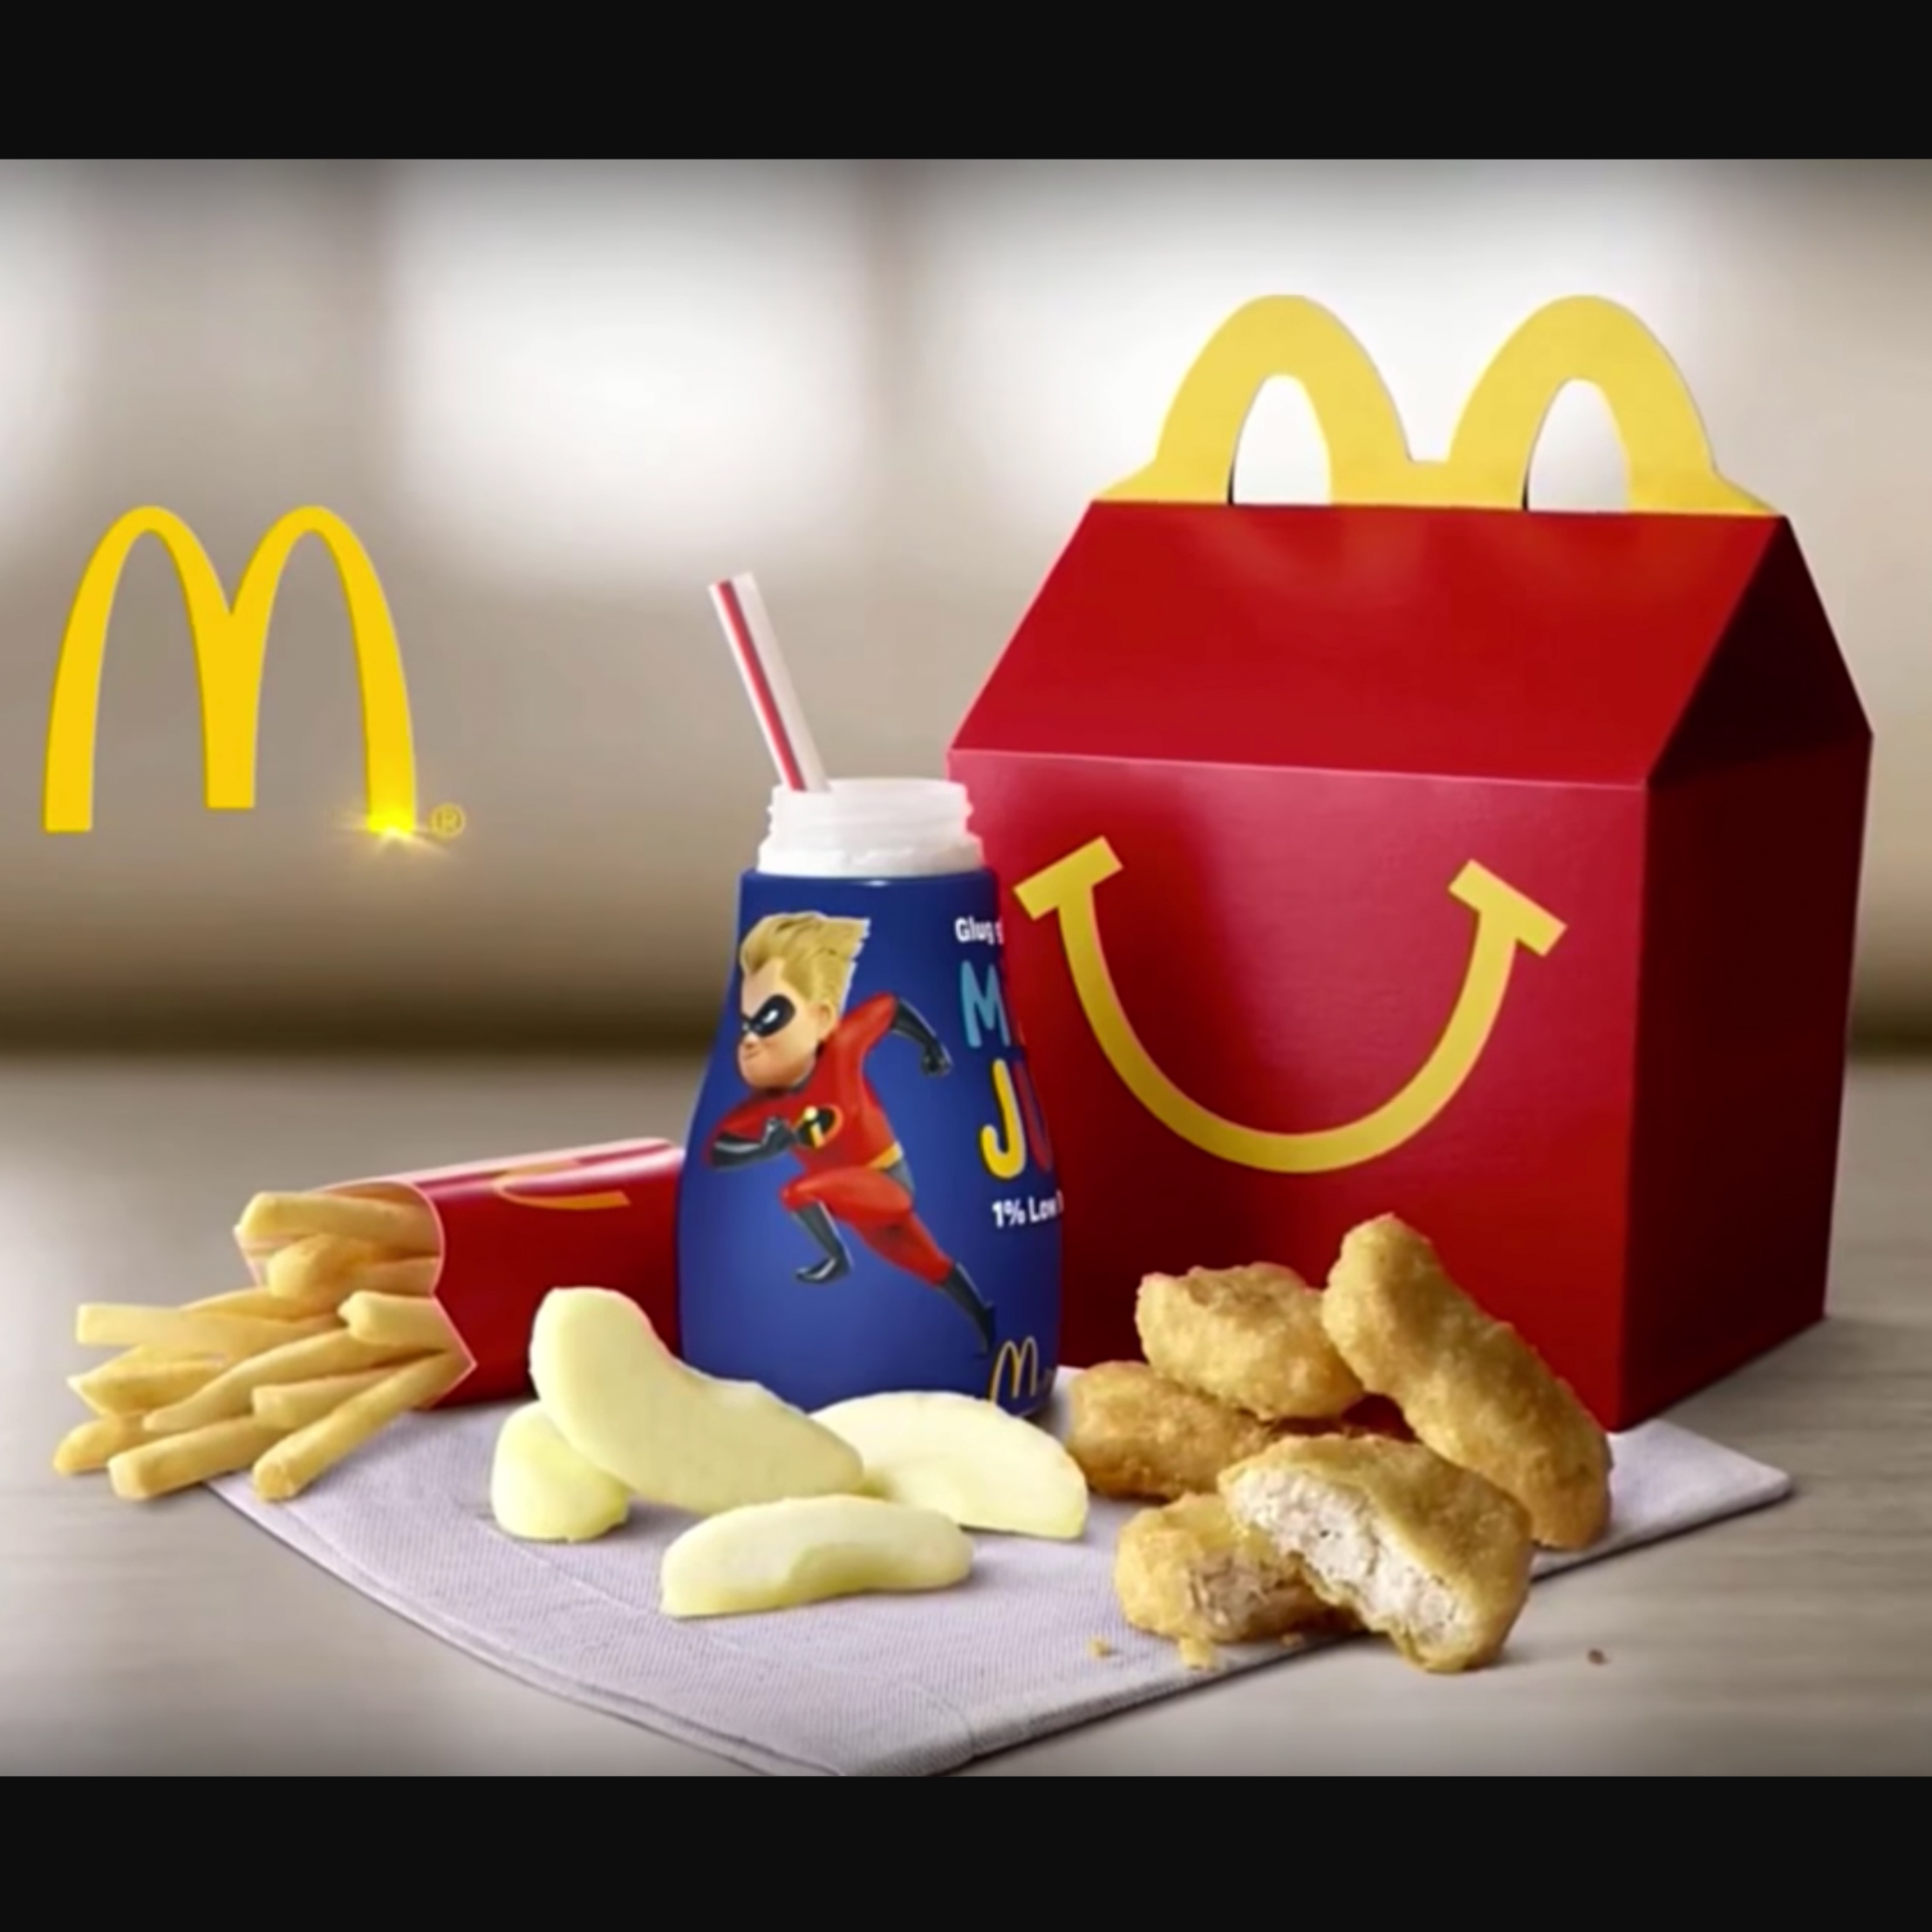 McDonald’s Incredibles 2 Tie-In Promo. 